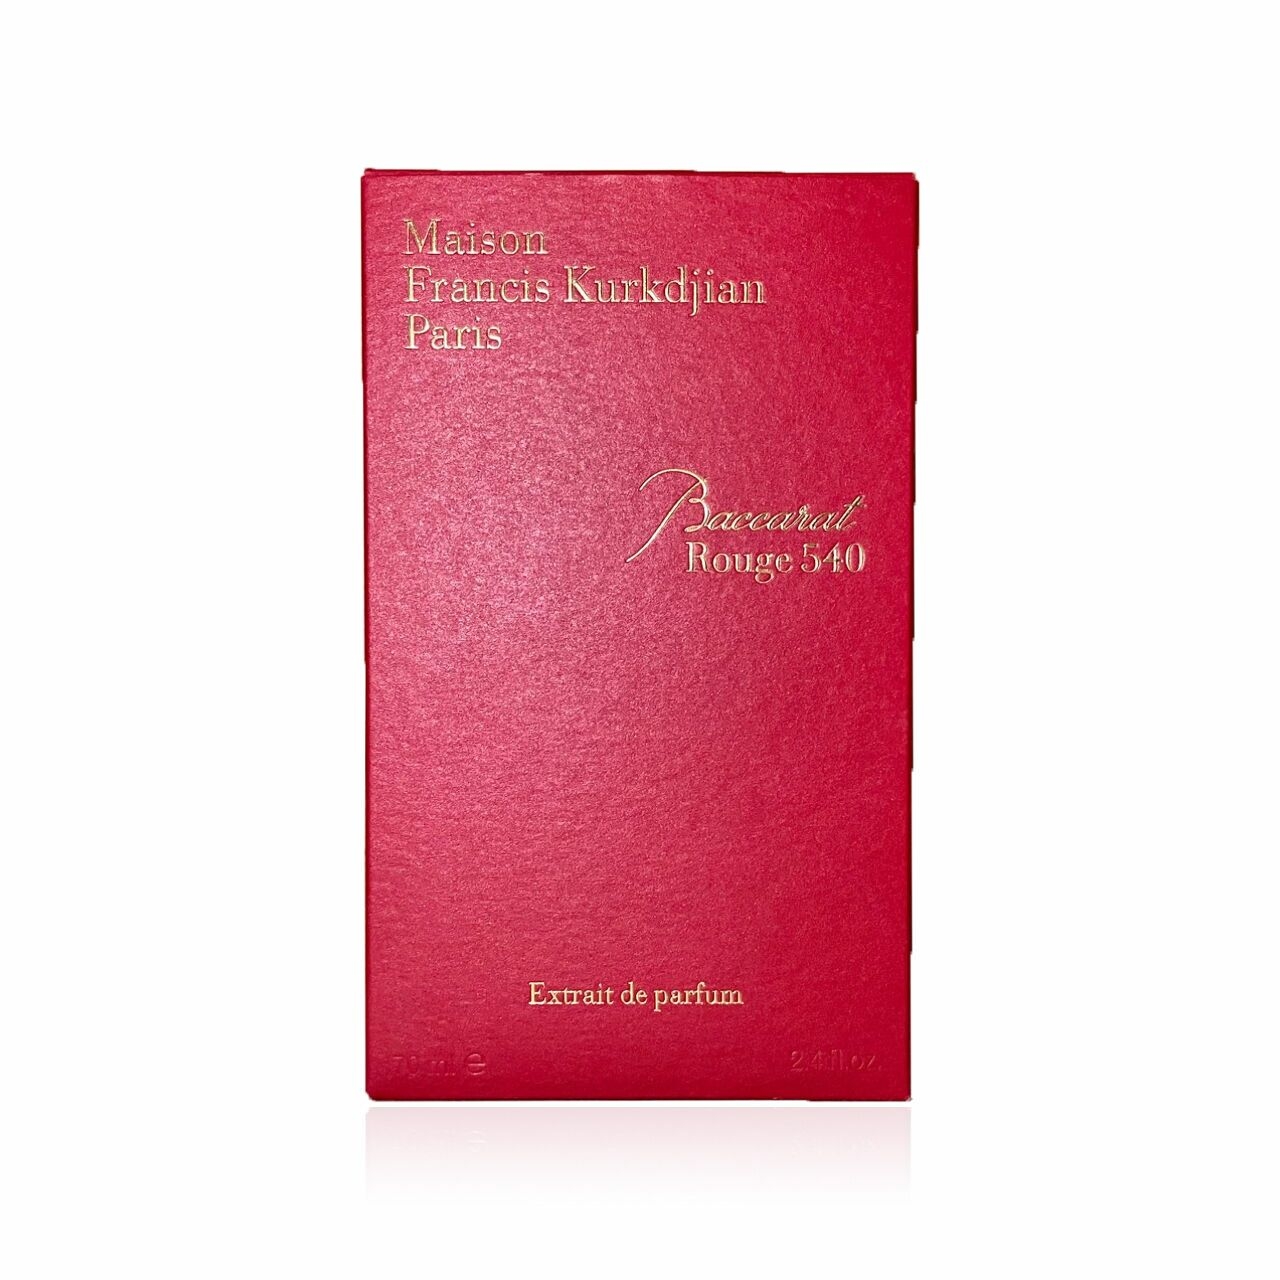 Maison francis kurkdjian Baccarat Rouge 540 Extrait de parfum